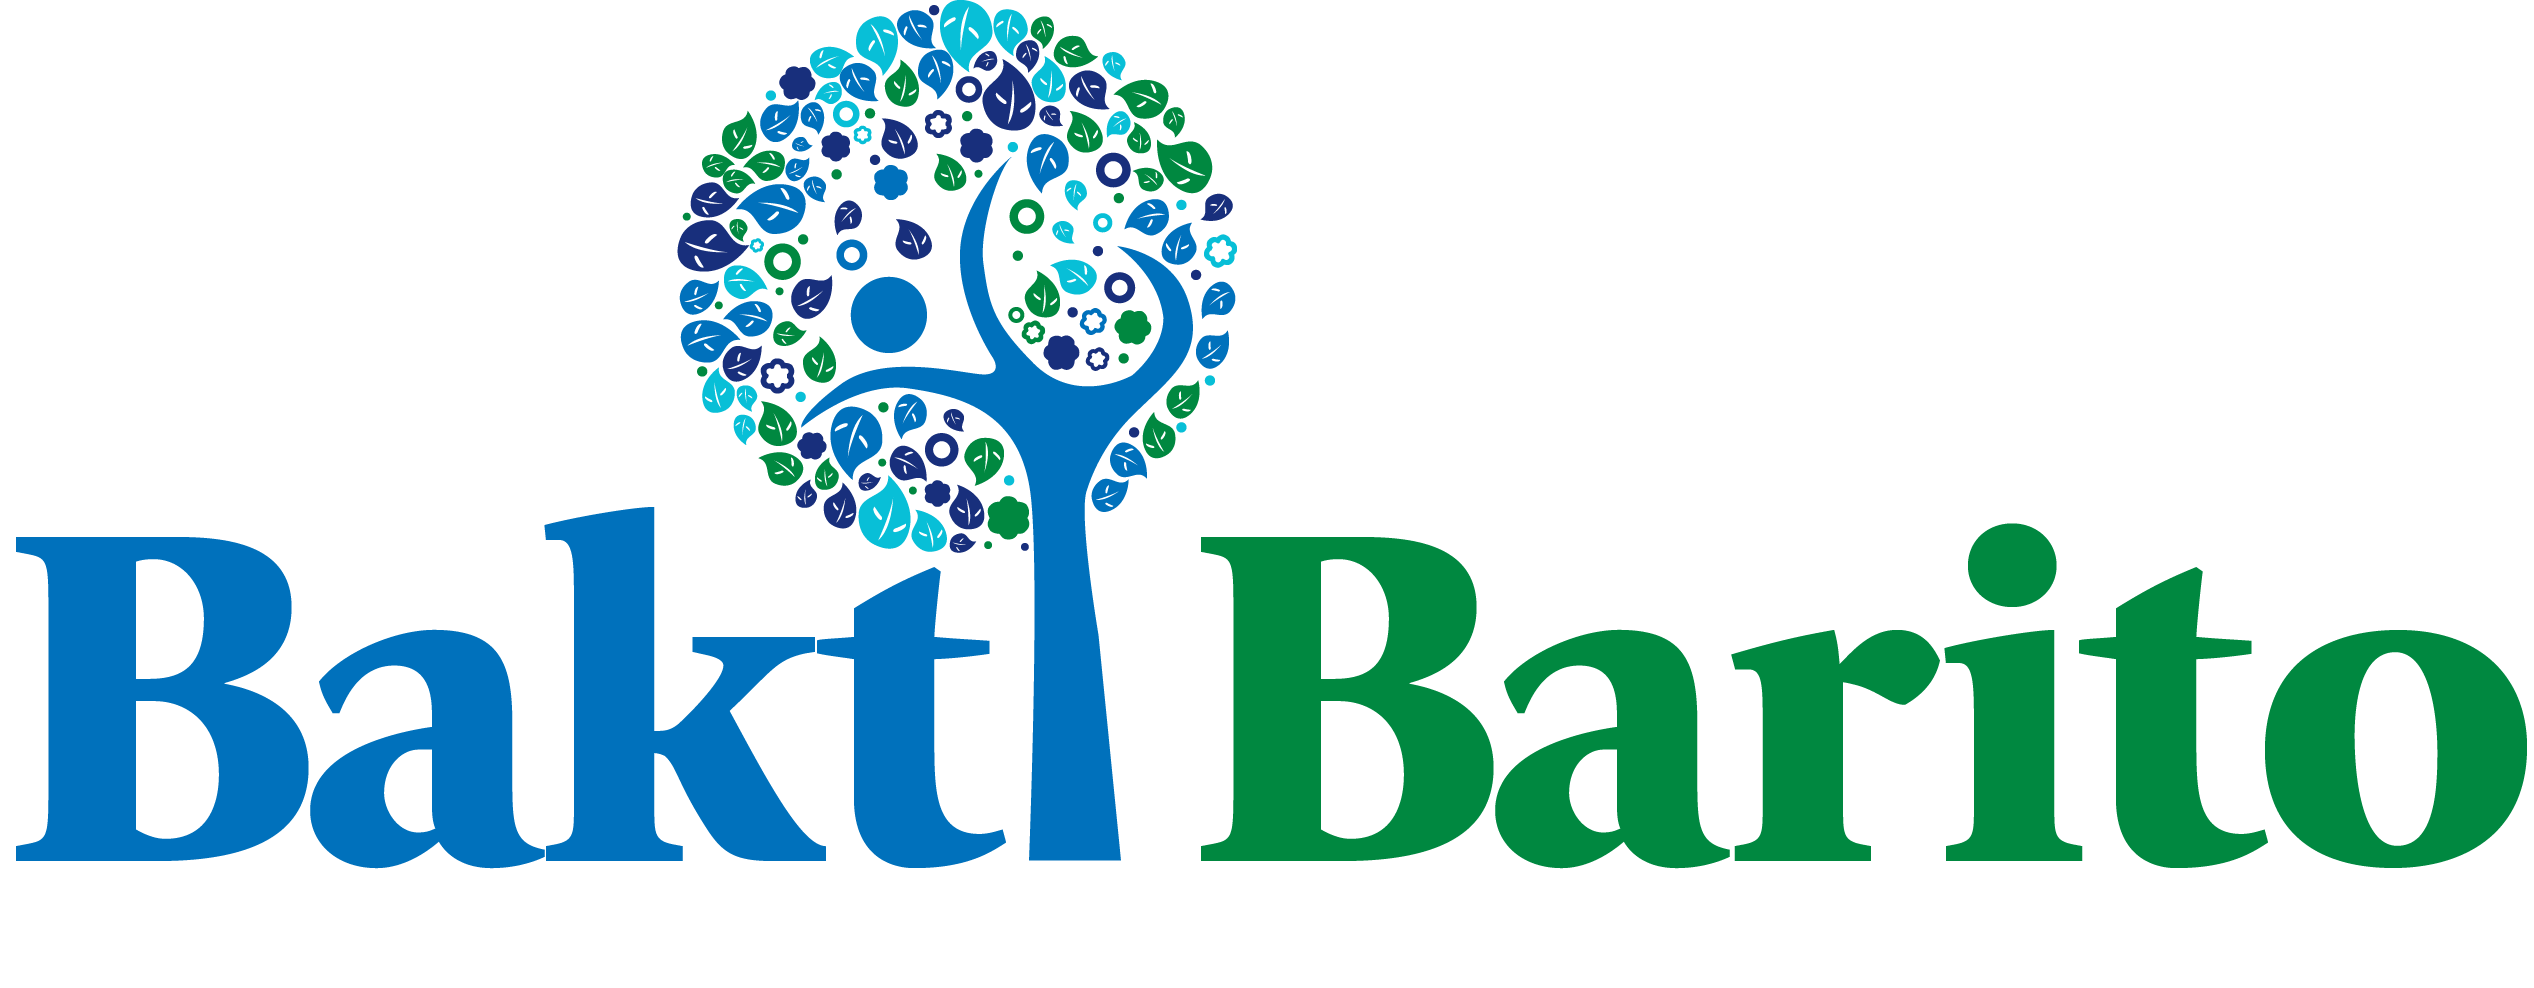 Yayasan Bakti Barito